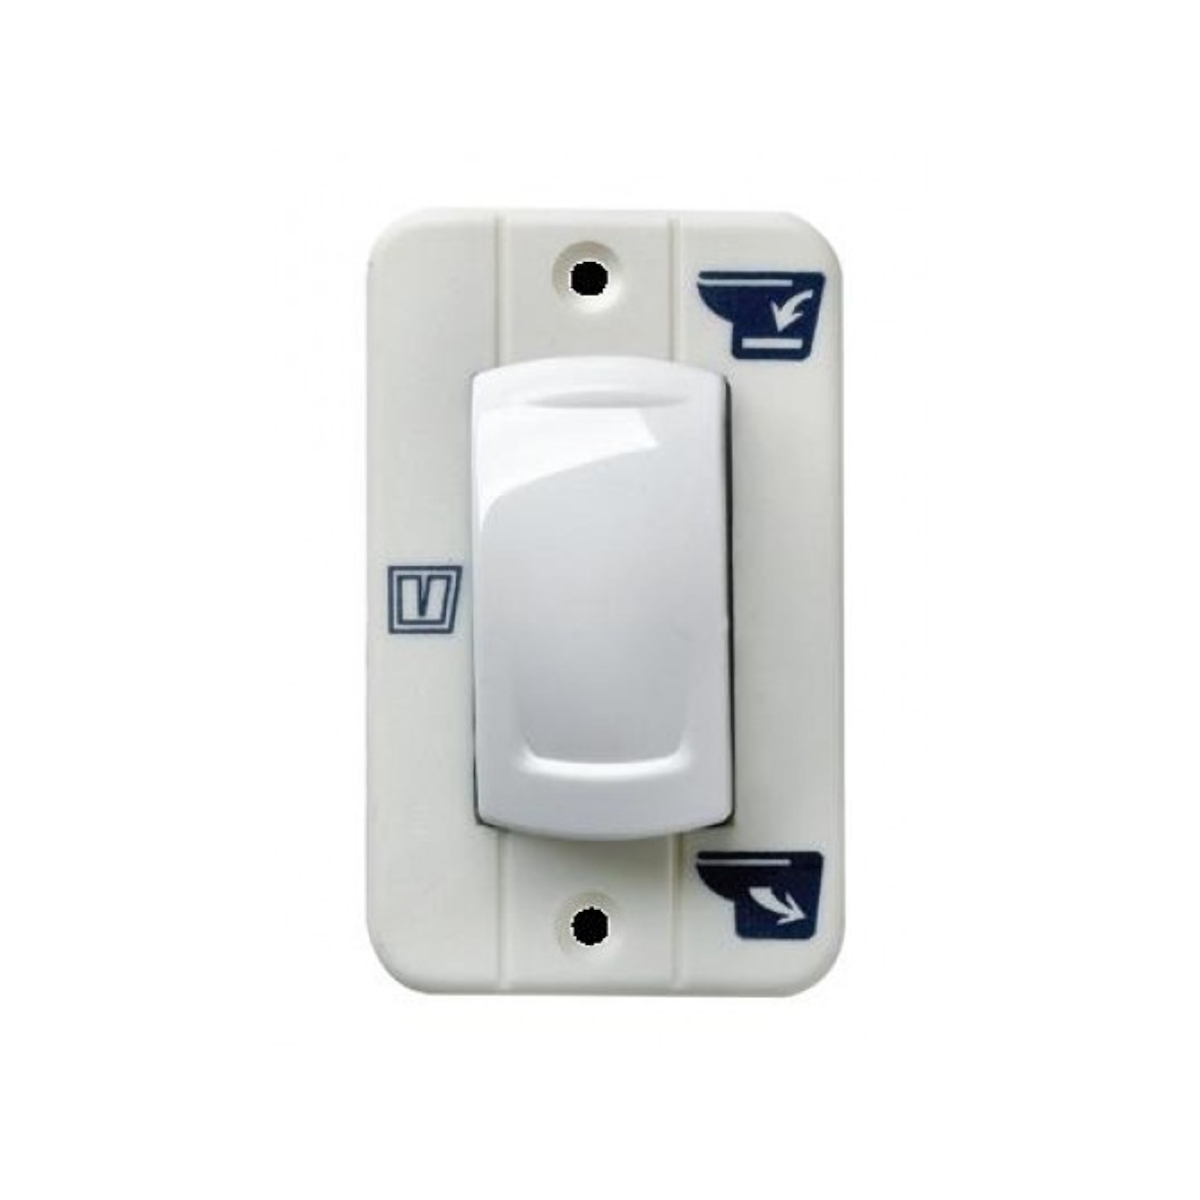 Interrupteur à bascule Vetus pour toilettes TMW 12/24 volts